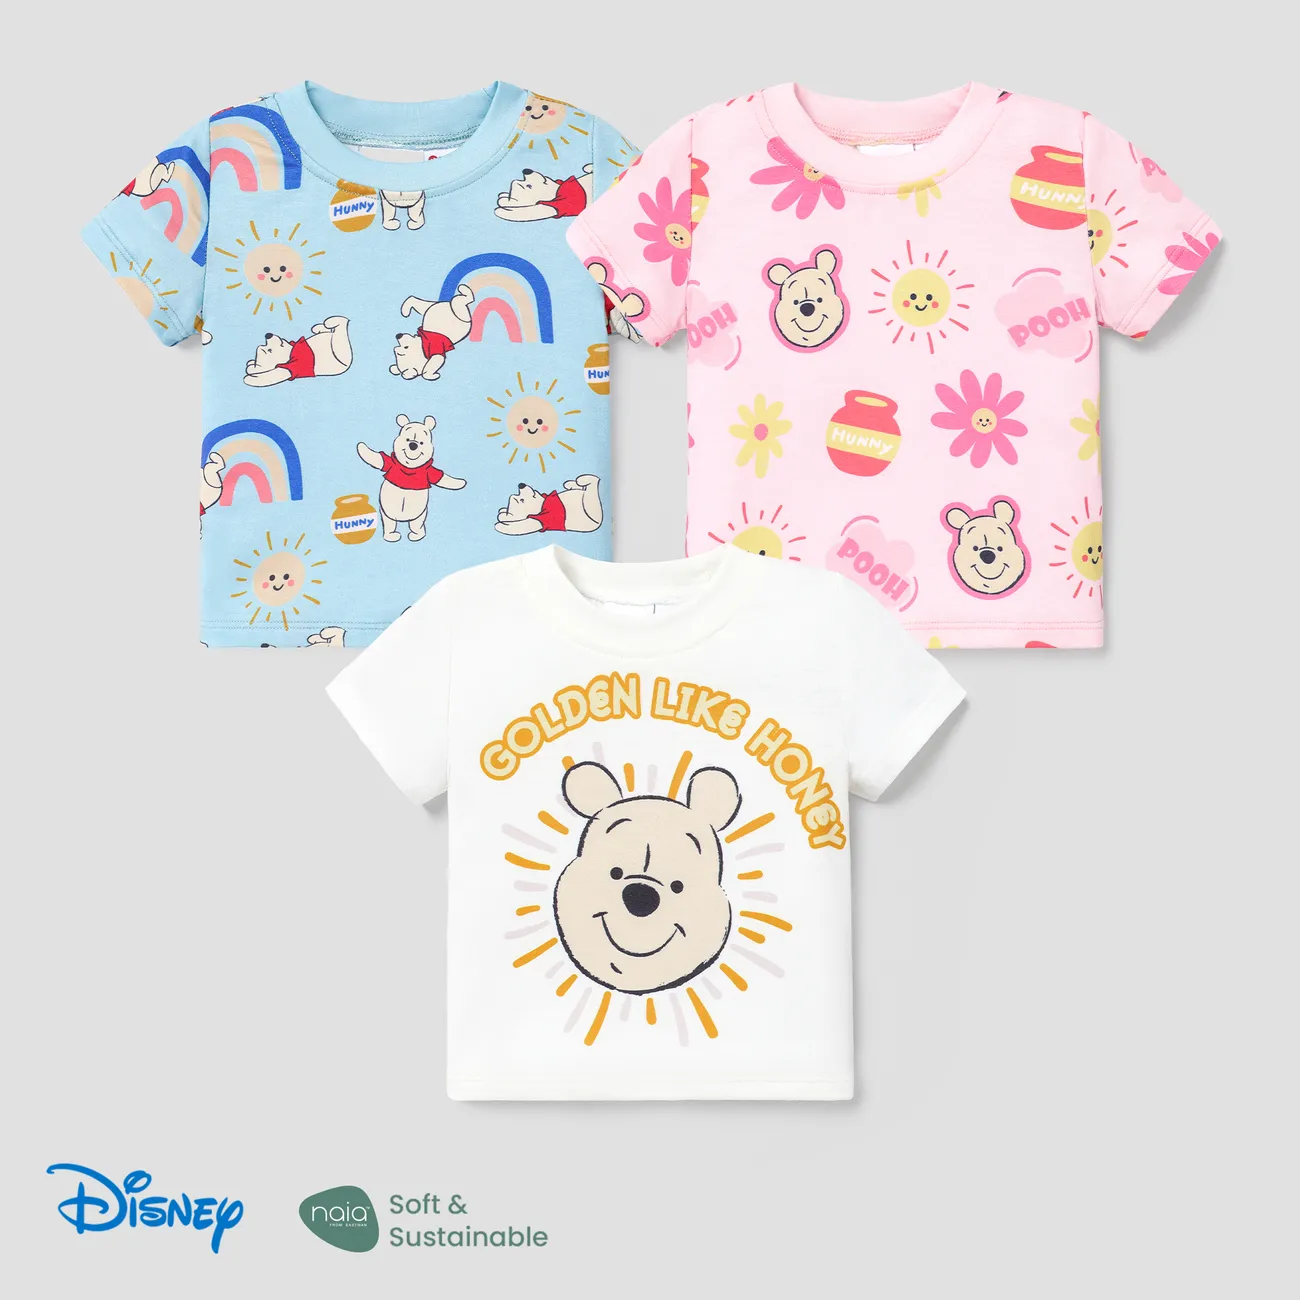 Disney Winnie the Pooh Unisexe Enfantin T-Shirt Rose big image 1